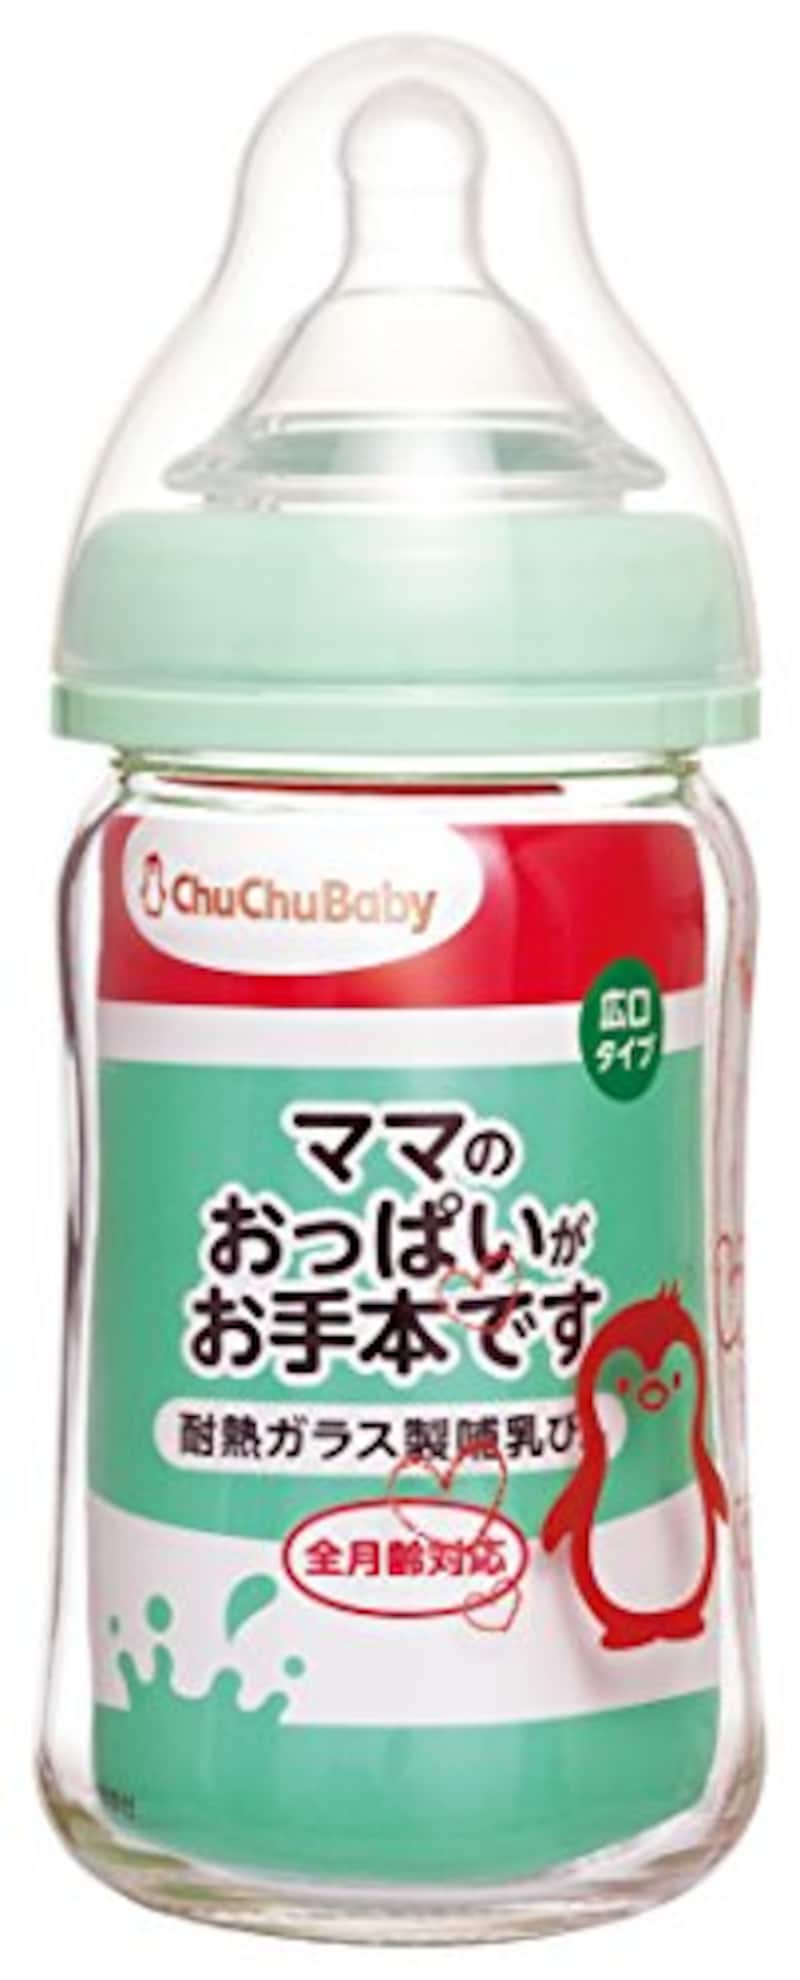 CHU CHU BABY（チュチュベビー）,広口タイプ 耐熱ガラス製哺乳びん